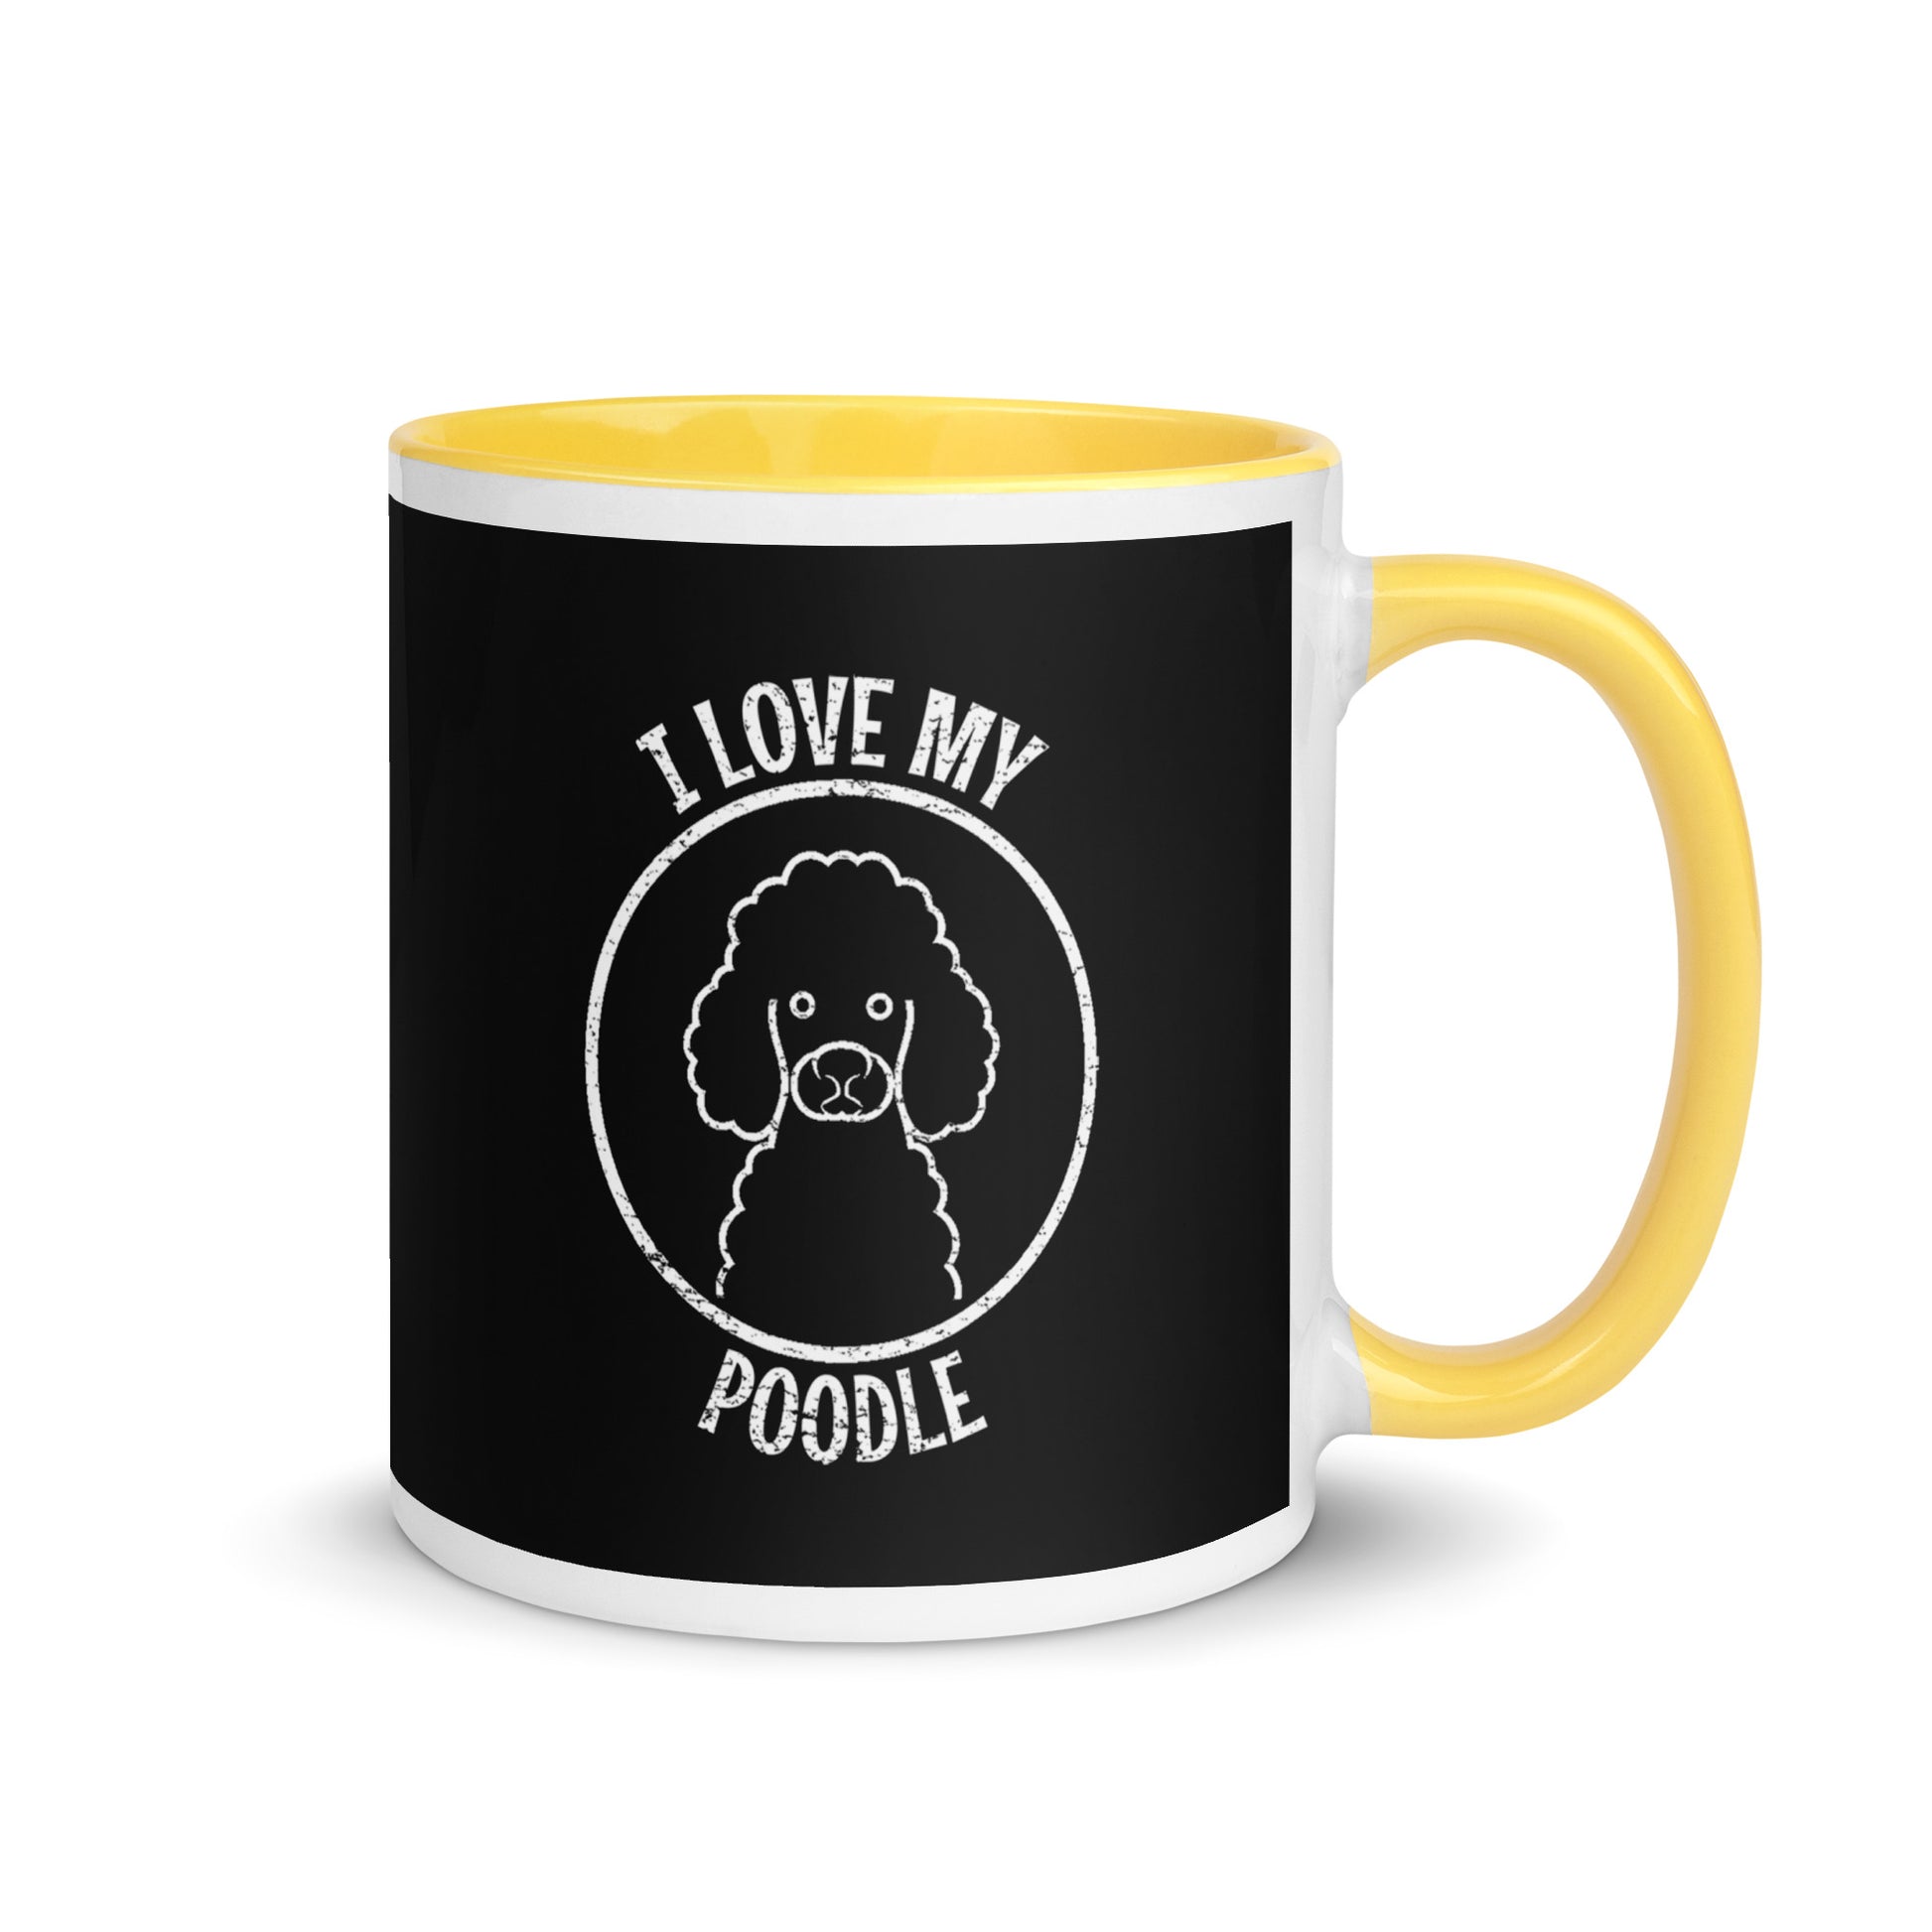 Poodle Mug, Poodle gift, gift for dog mom, custom dog gift, dog owner gift, pet memorial gift